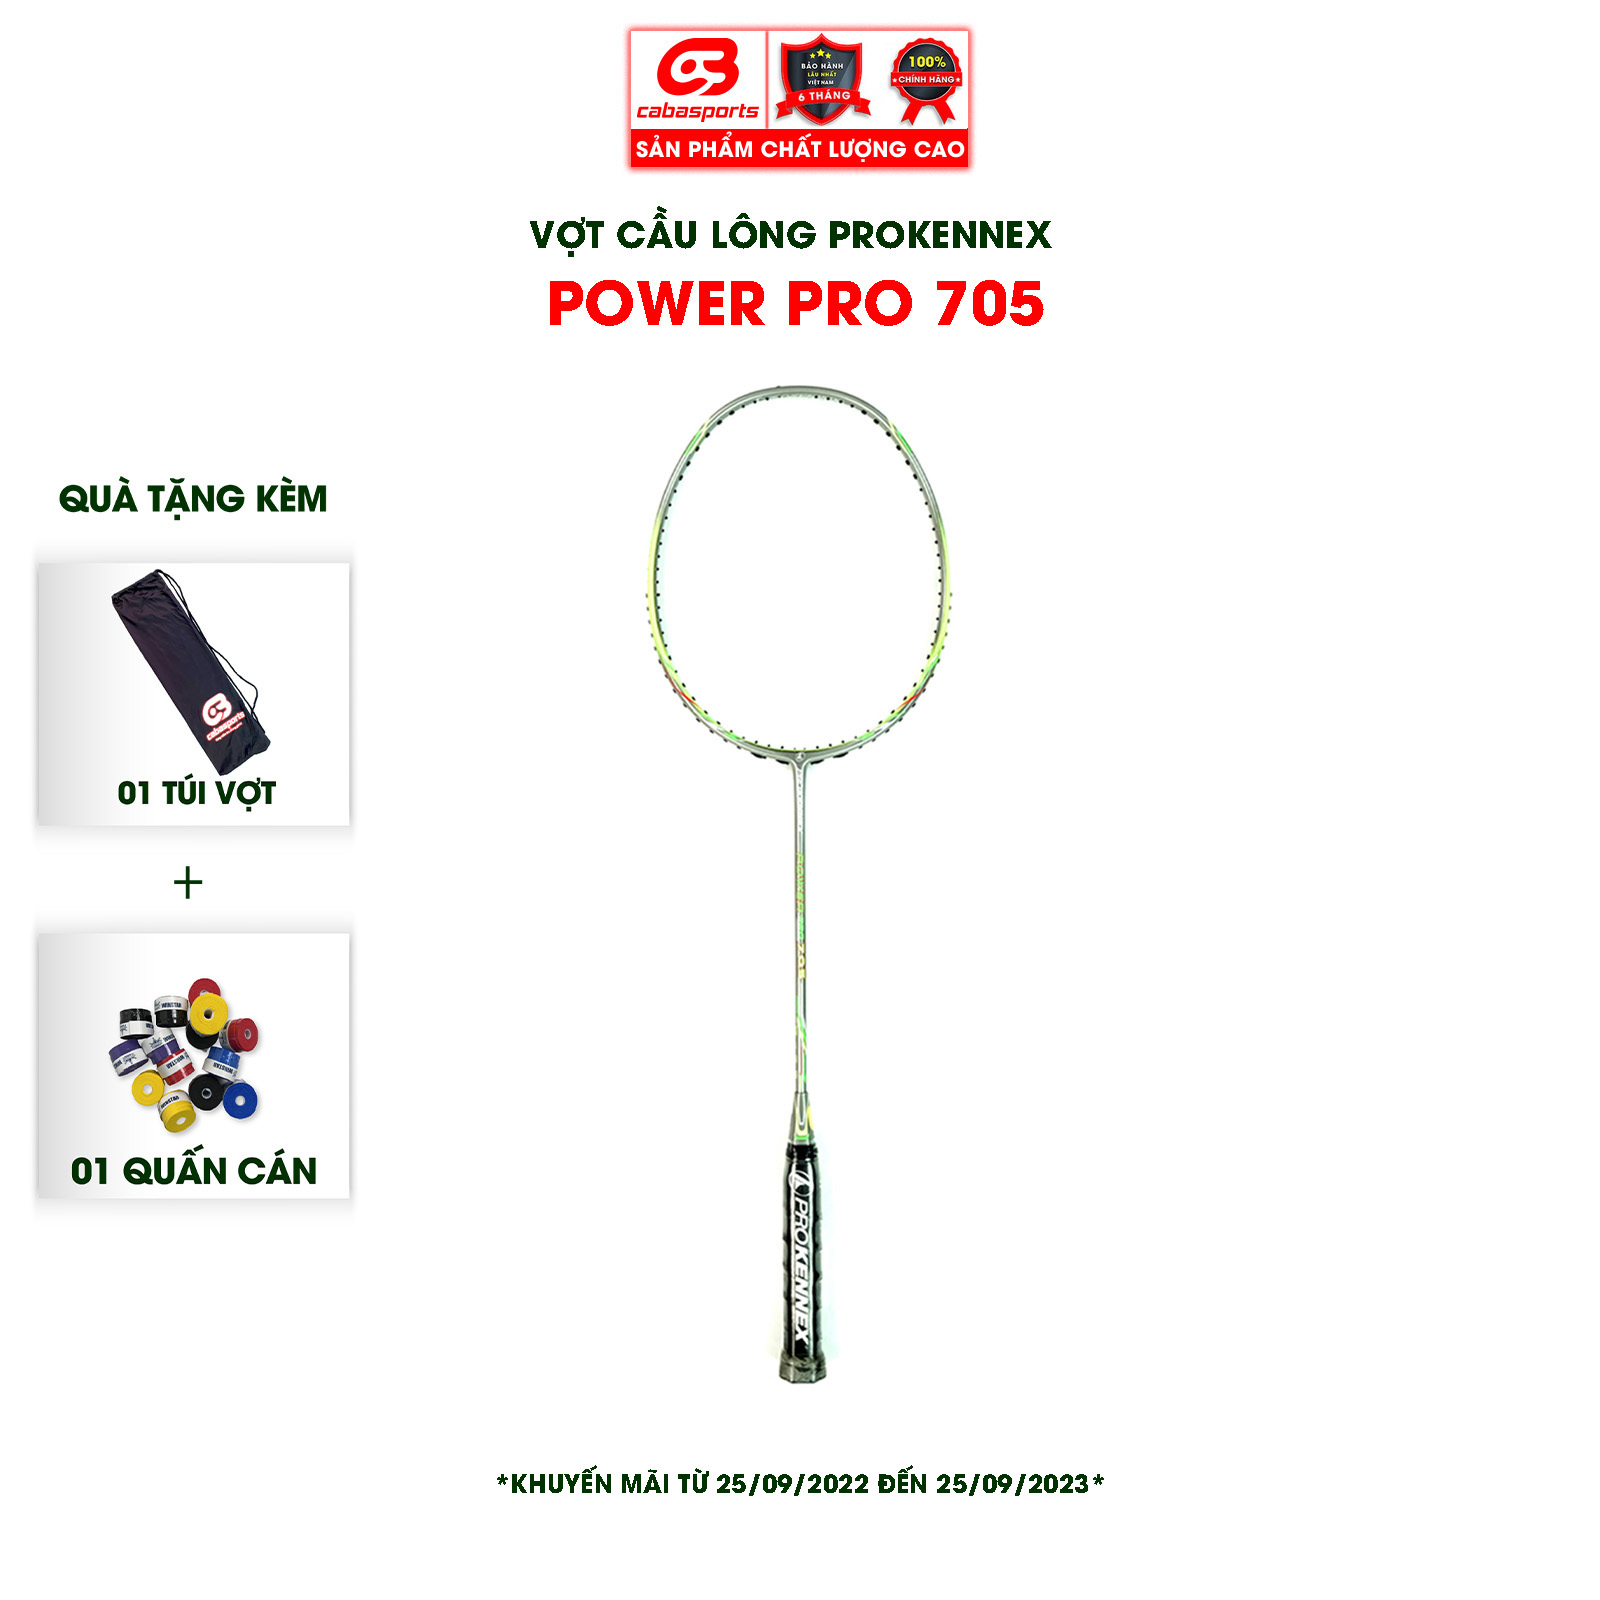 Vợt cầu lông Prokennex POWER PRO 705 Xanh Xám chuyên công - Đã đan lưới (1 cây)